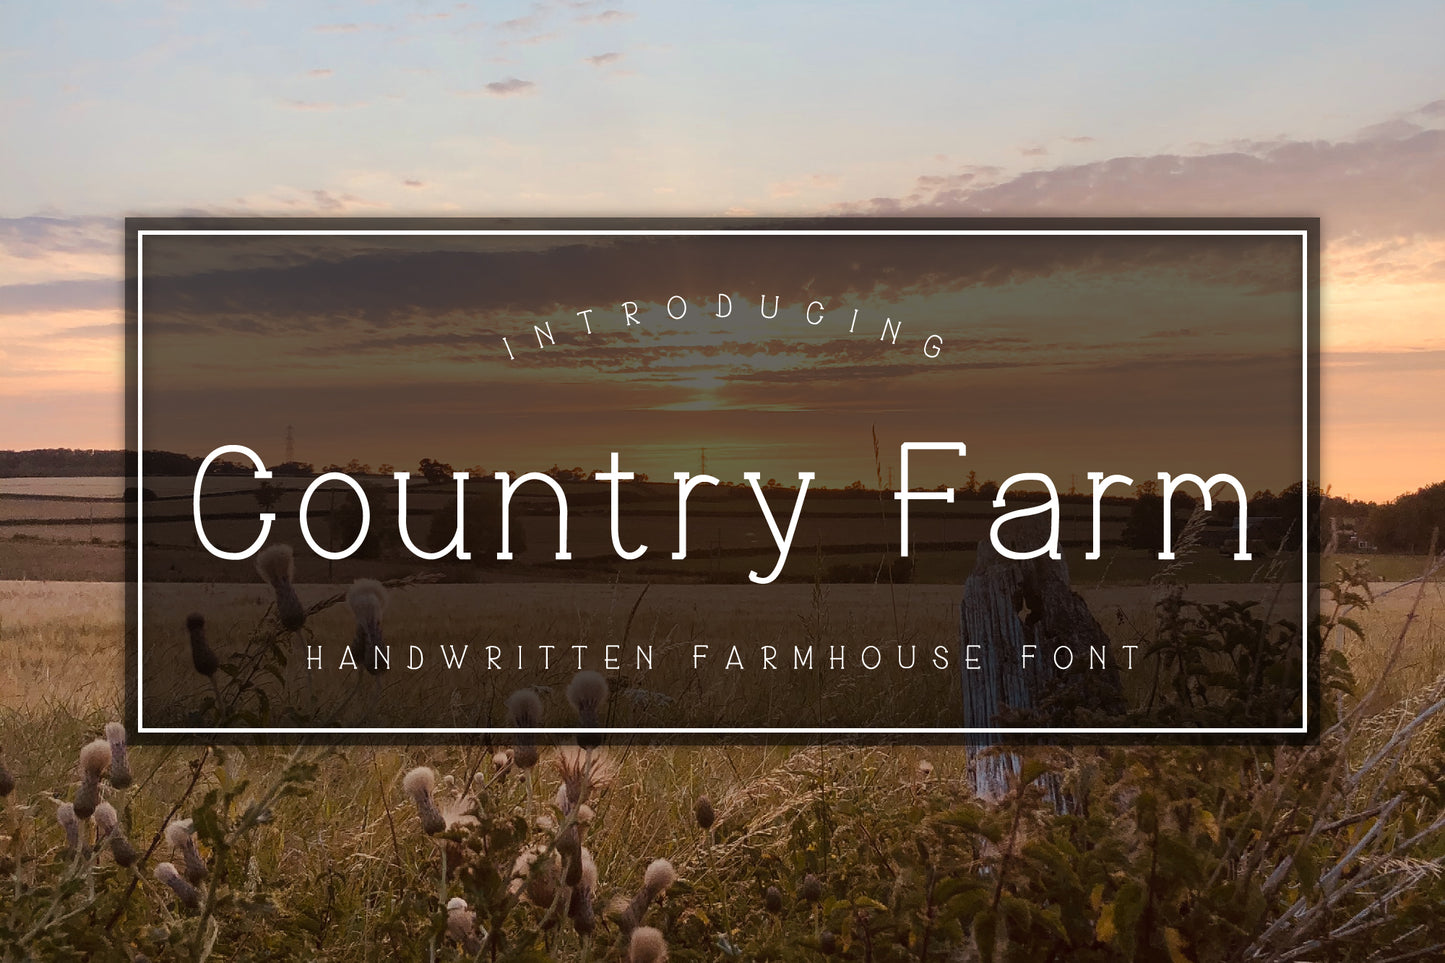 Country Farm - Handwritten Farmhouse Font